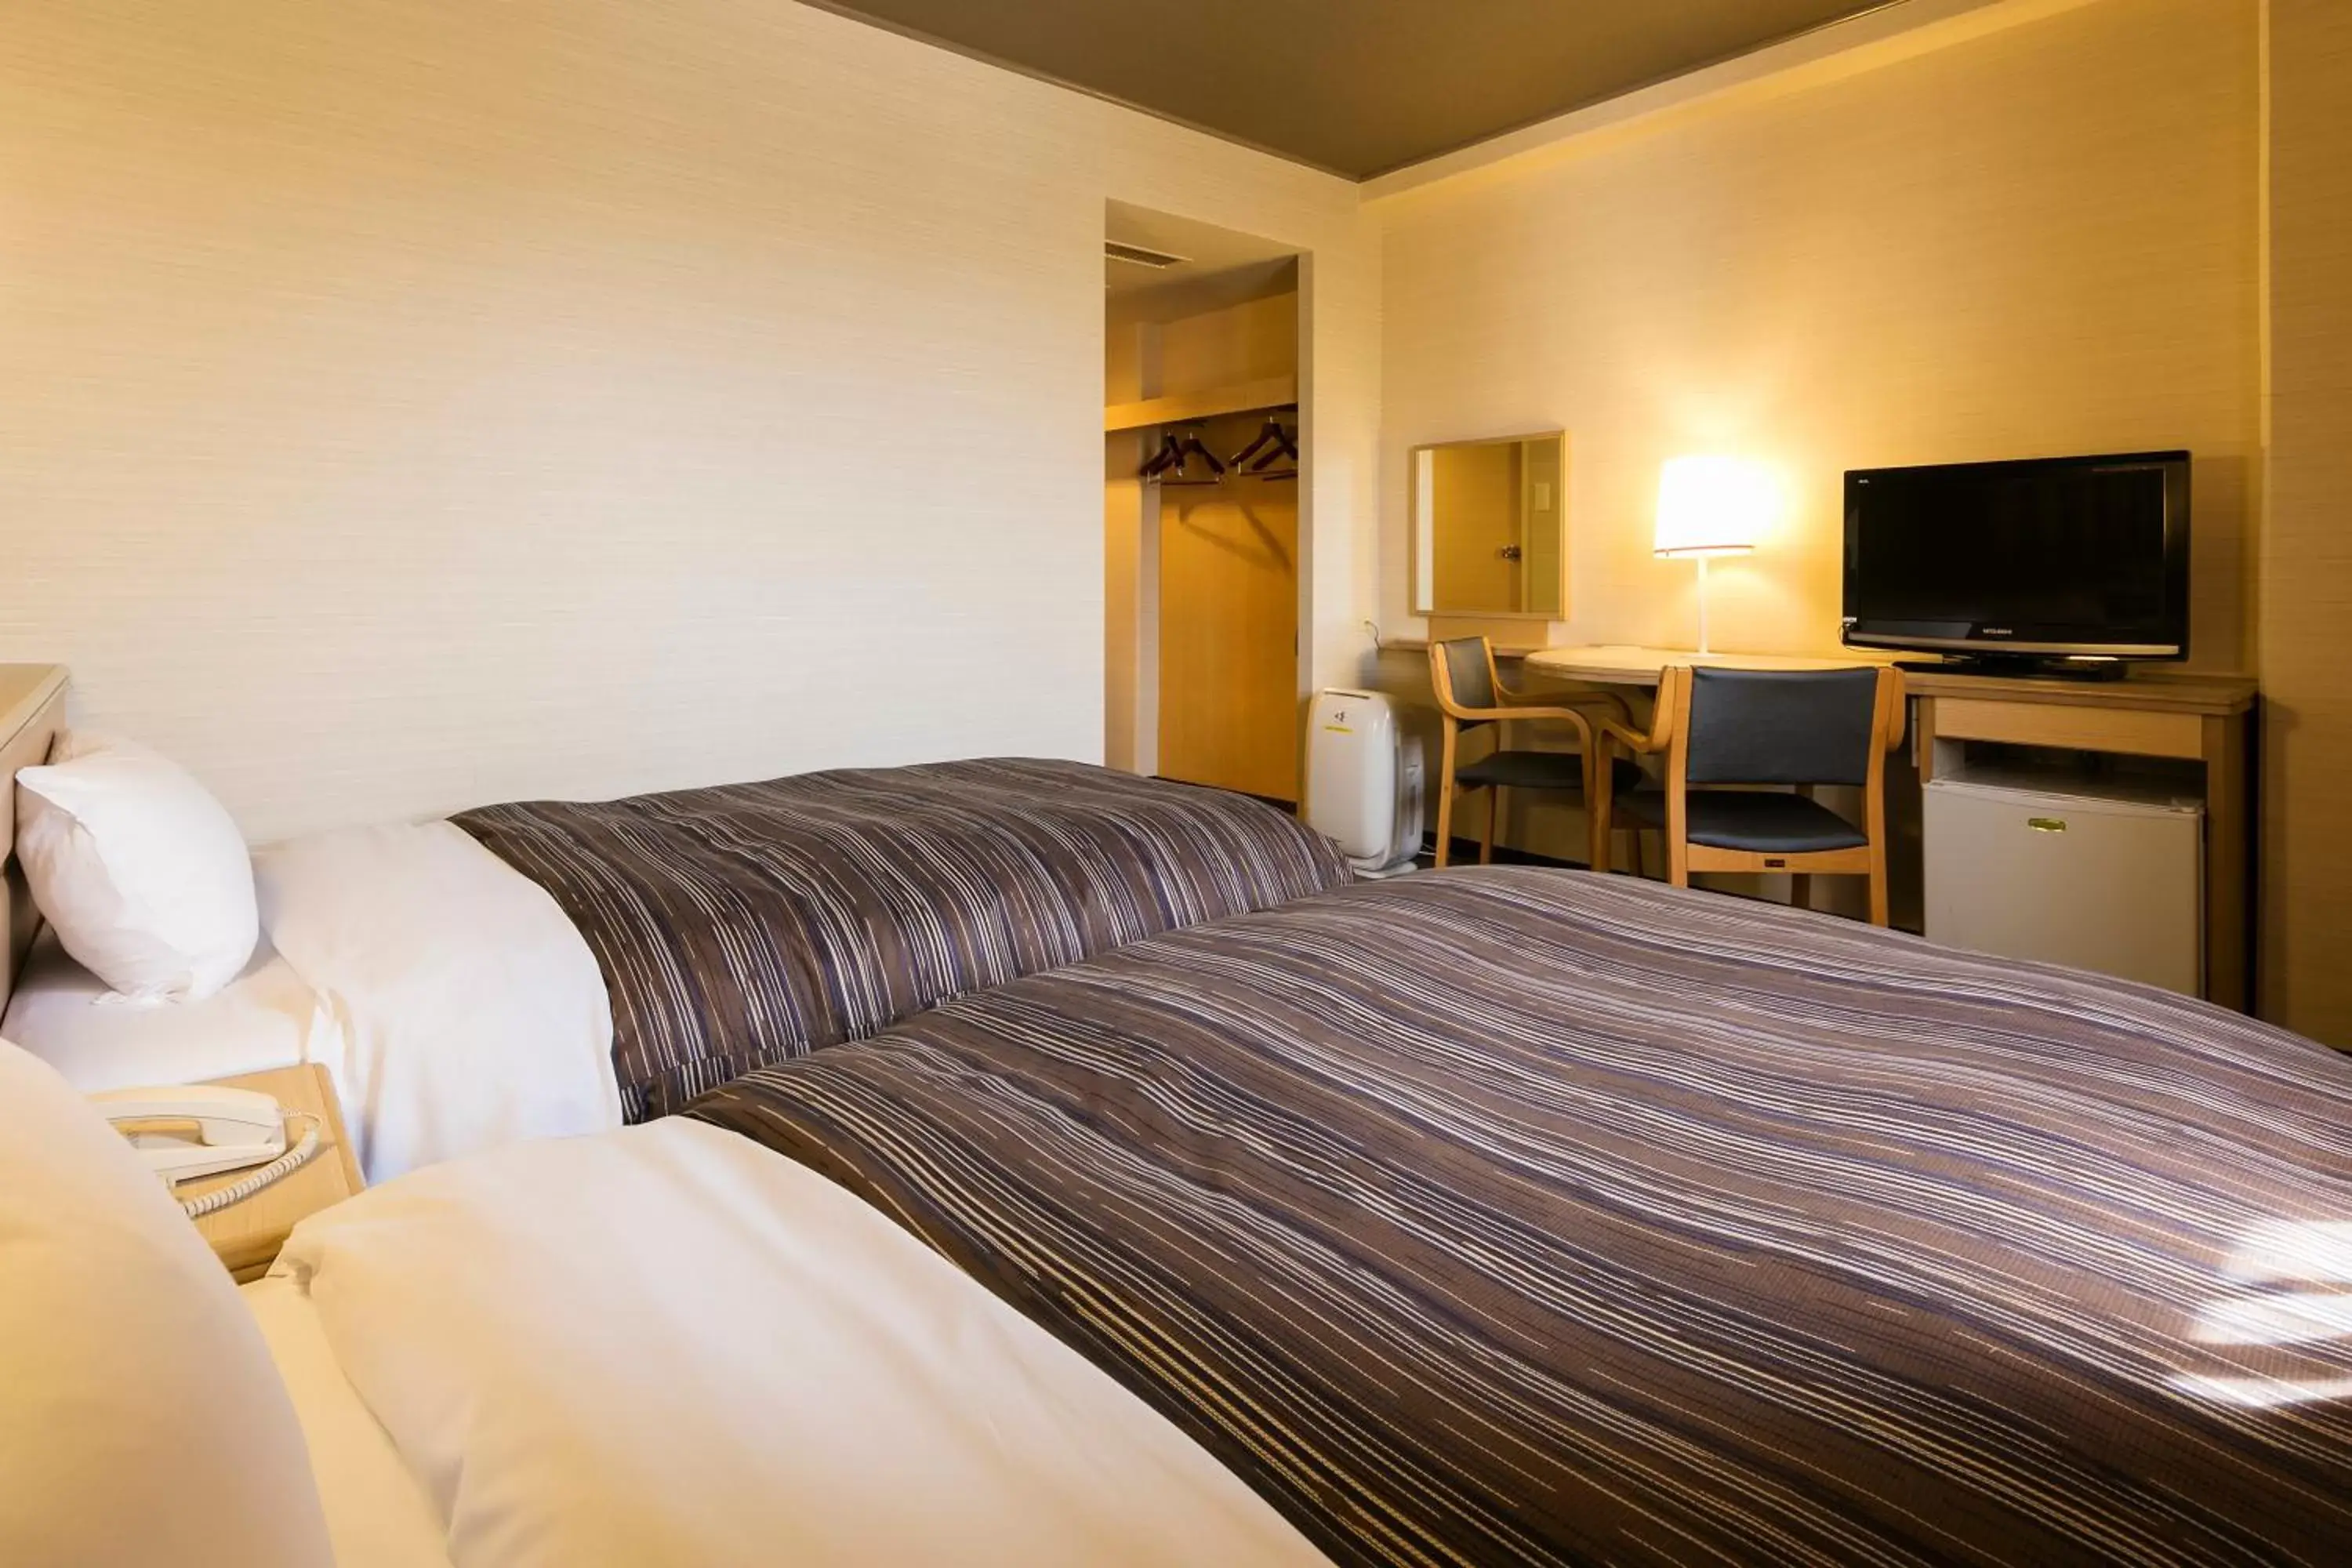 Bedroom, Bed in Ark Hotel Okayama -ROUTE INN HOTELS-